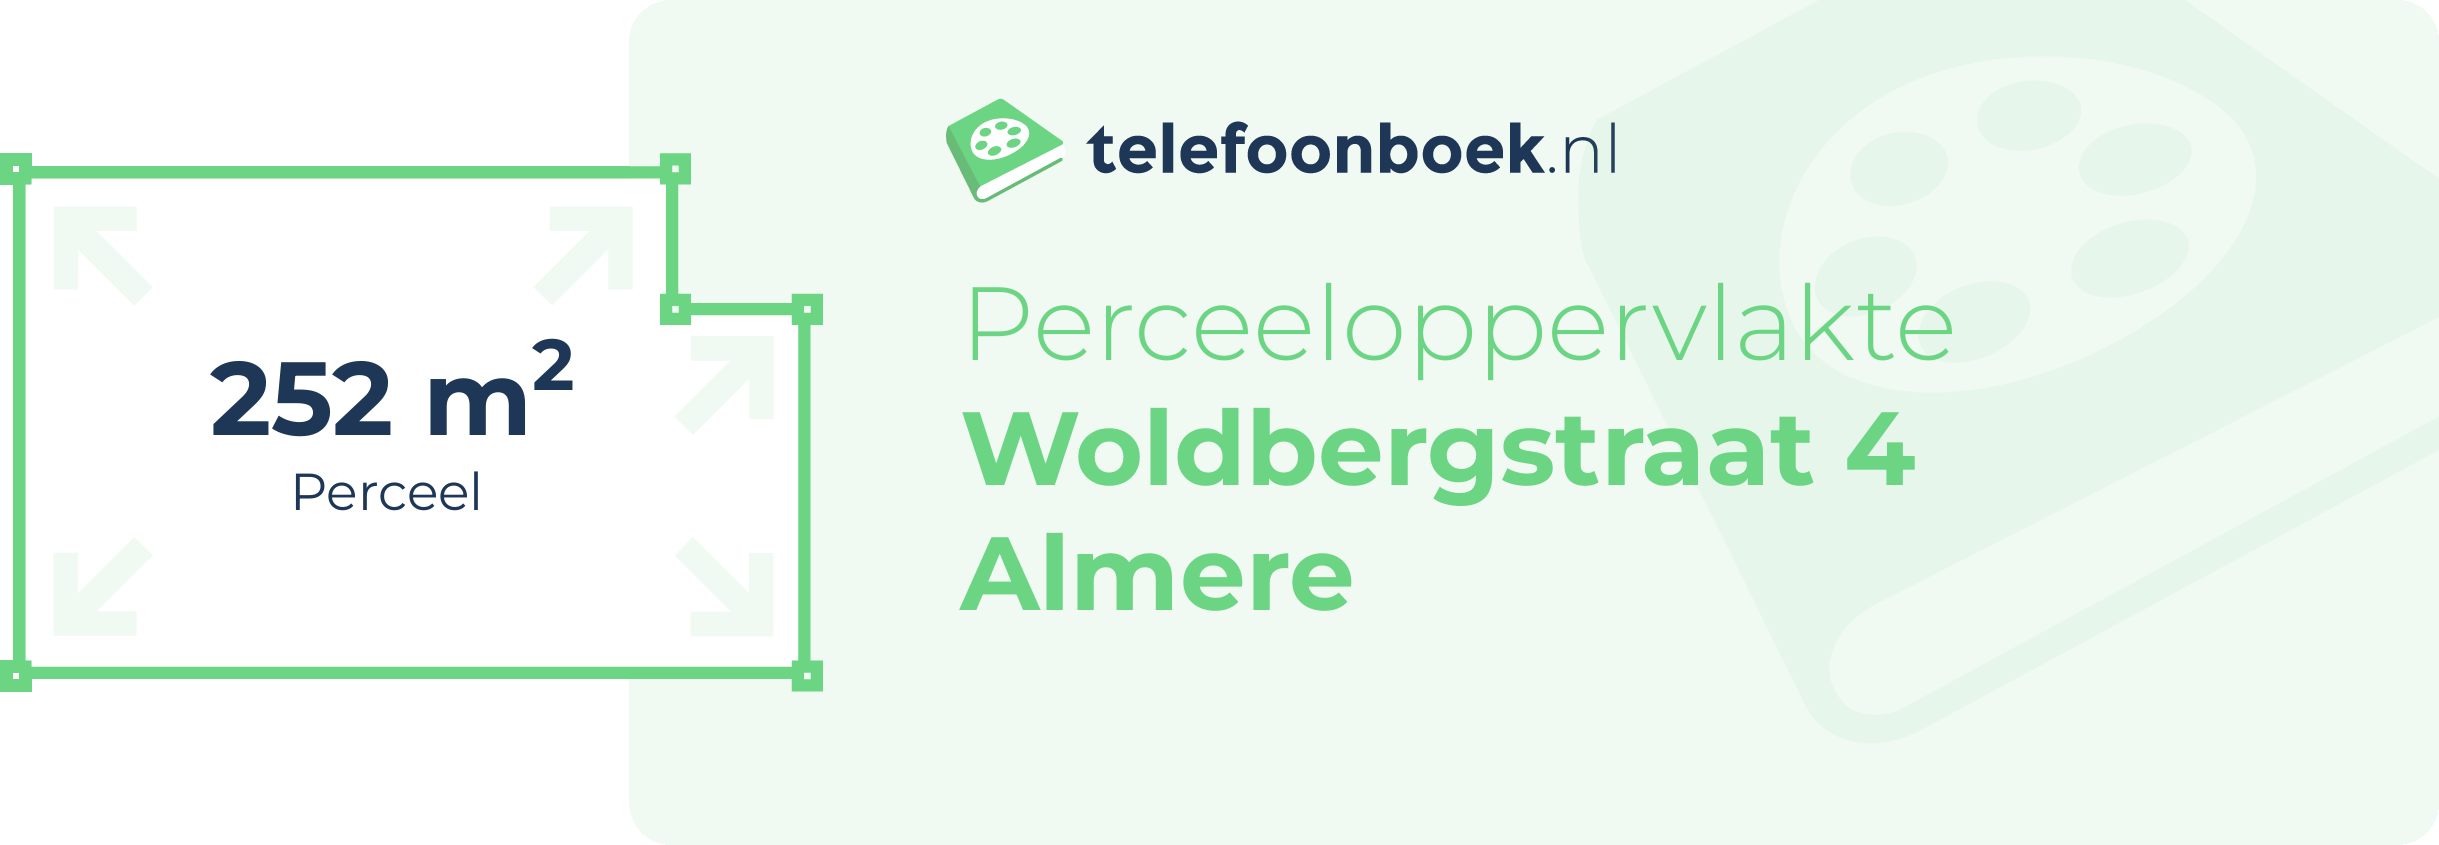 Perceeloppervlakte Woldbergstraat 4 Almere